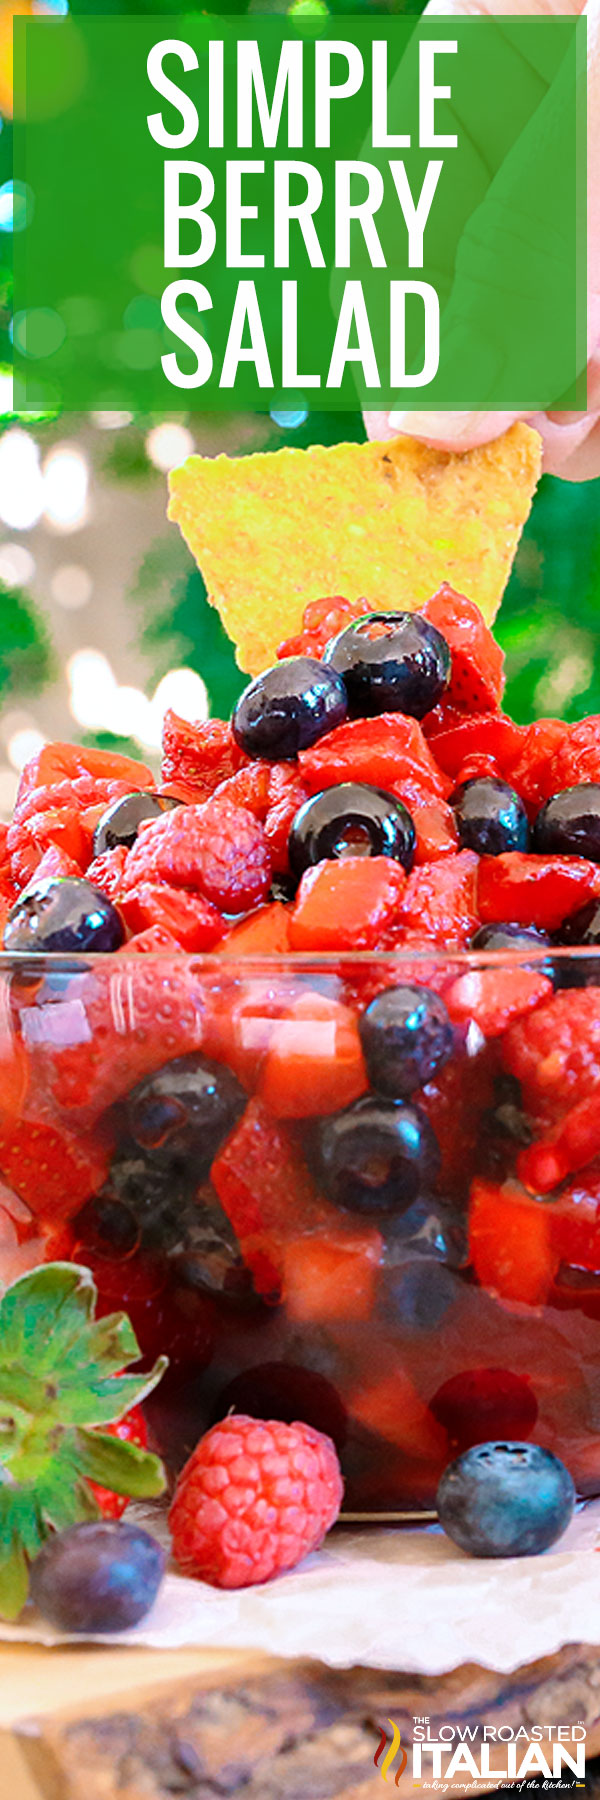 Simple Berry Salad closeup